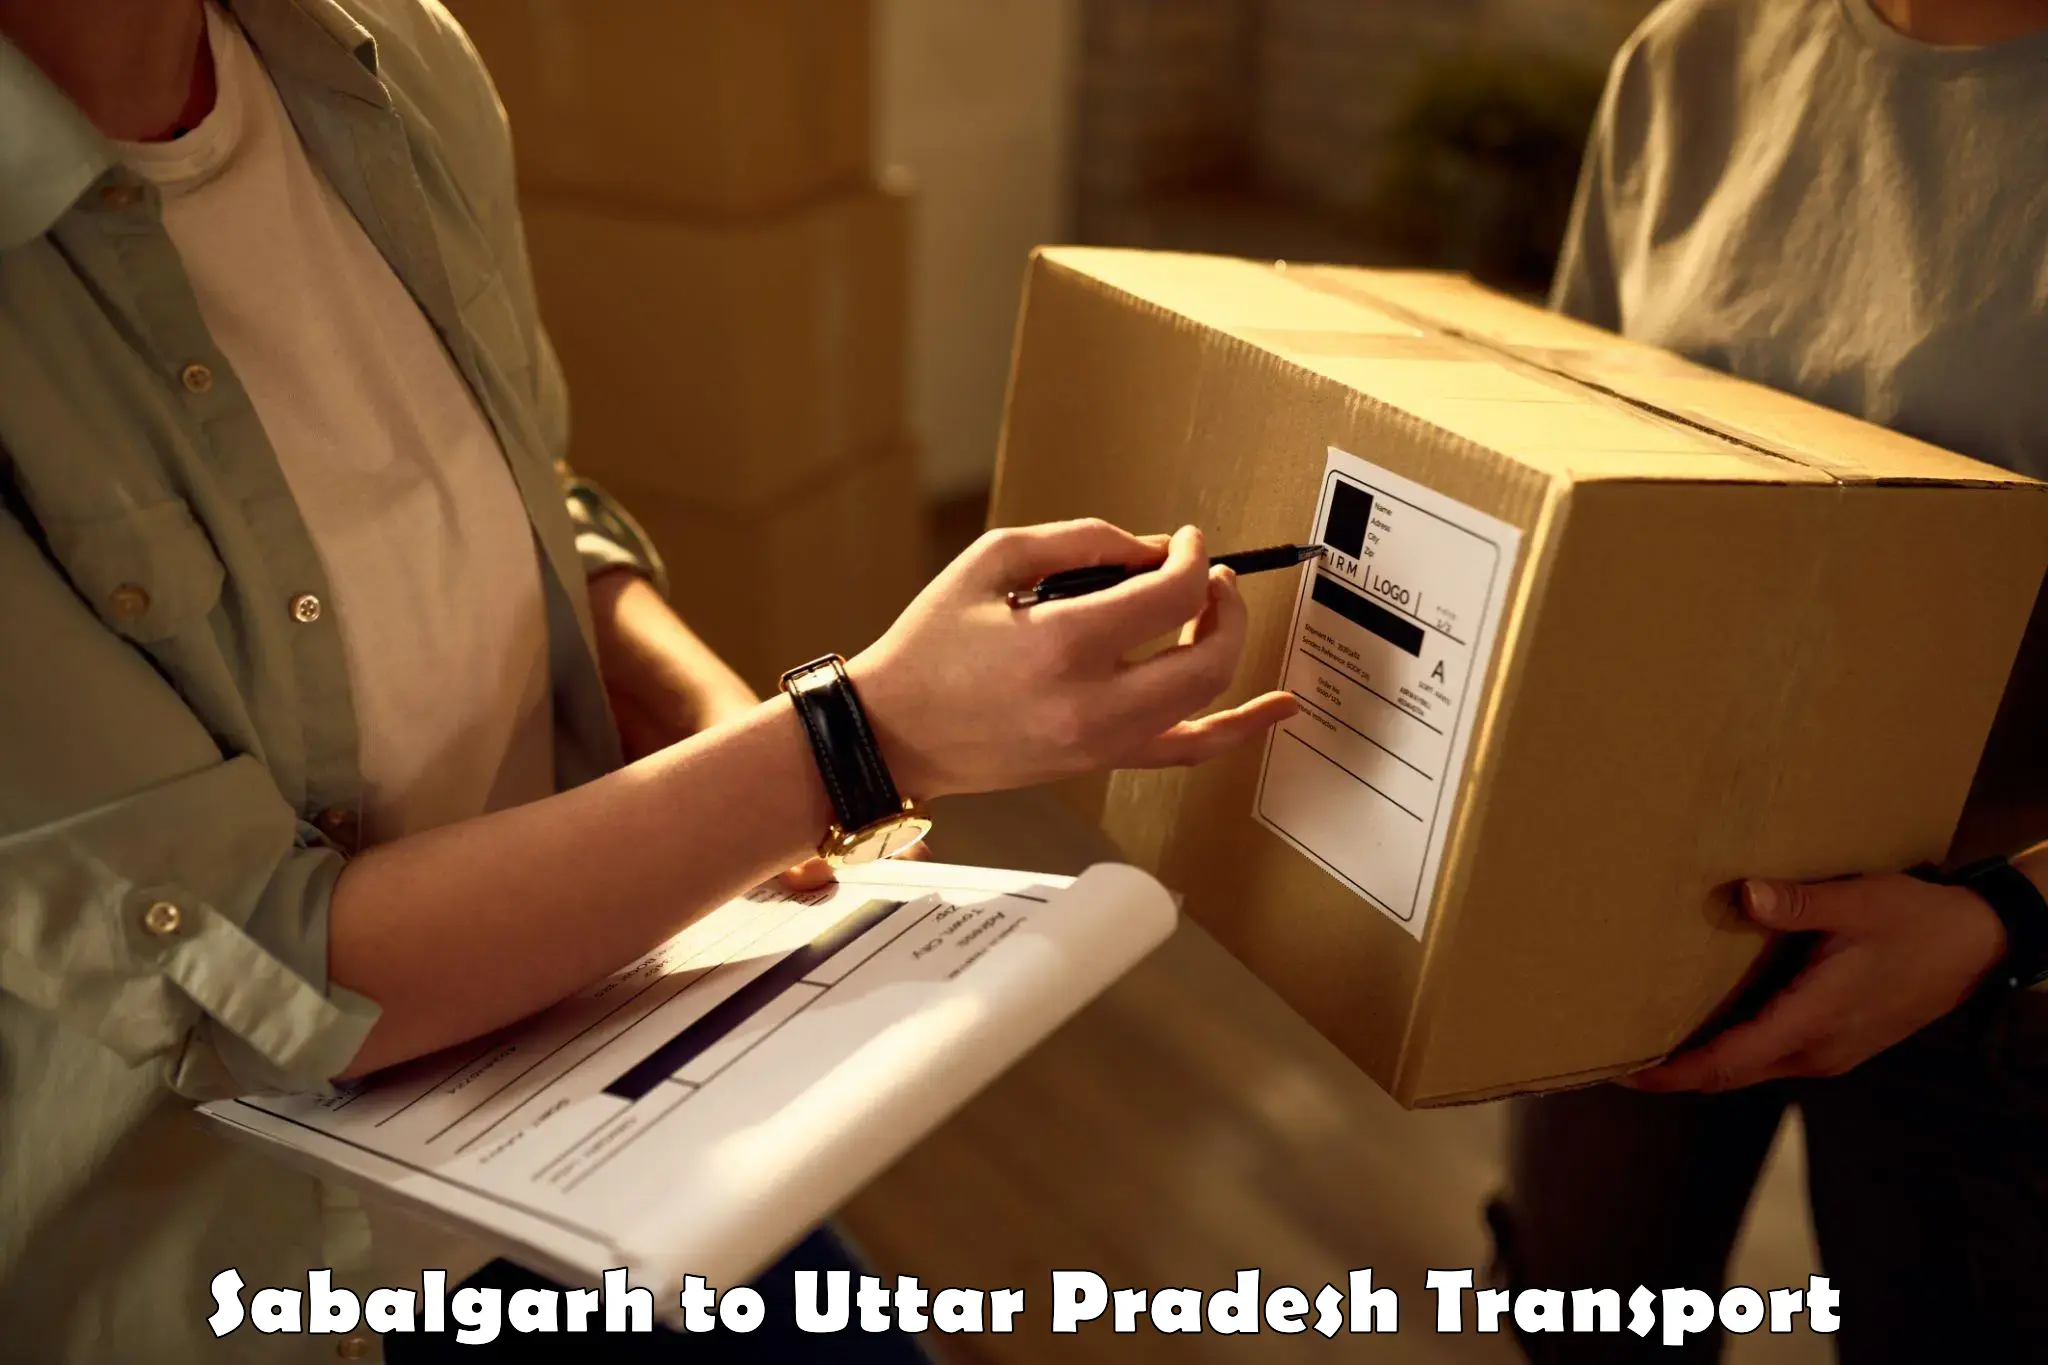 Shipping partner Sabalgarh to IIT Varanasi